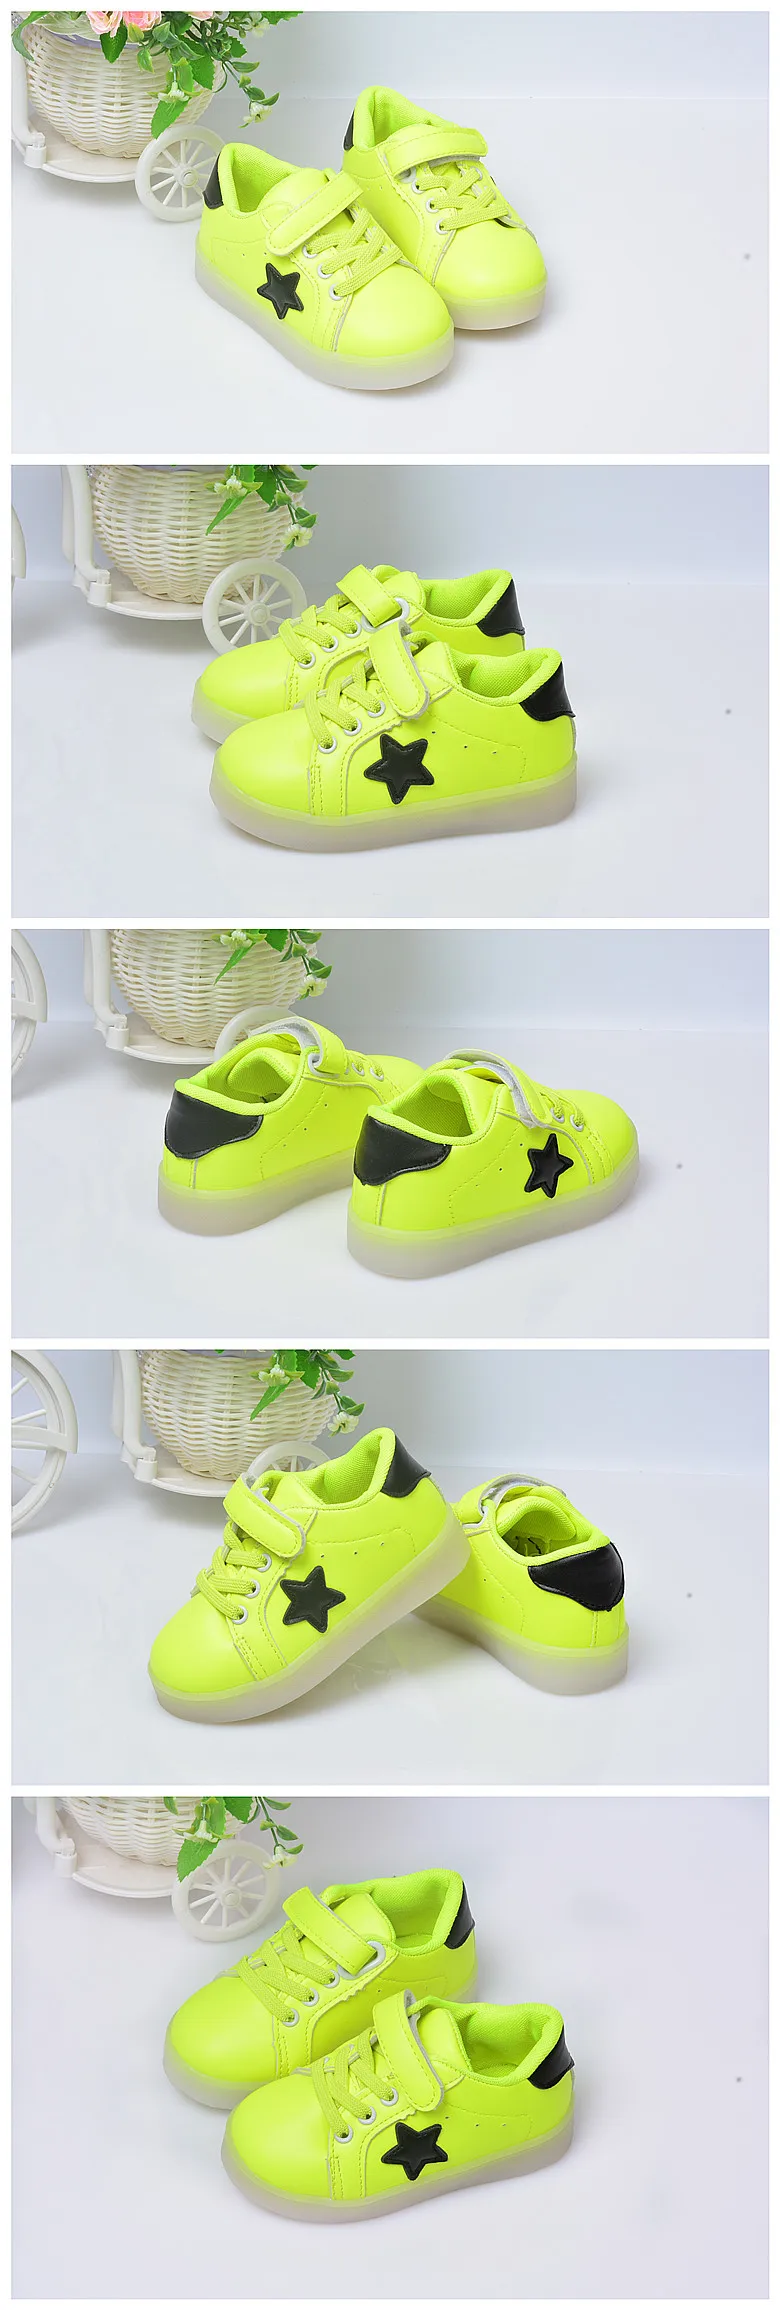 От 1 до 5 лет Детская светящаяся обувь для мальчиков и девочек модная обувь светящаяся детская мягкая спортивная обувь для первых прогулок кроссовки